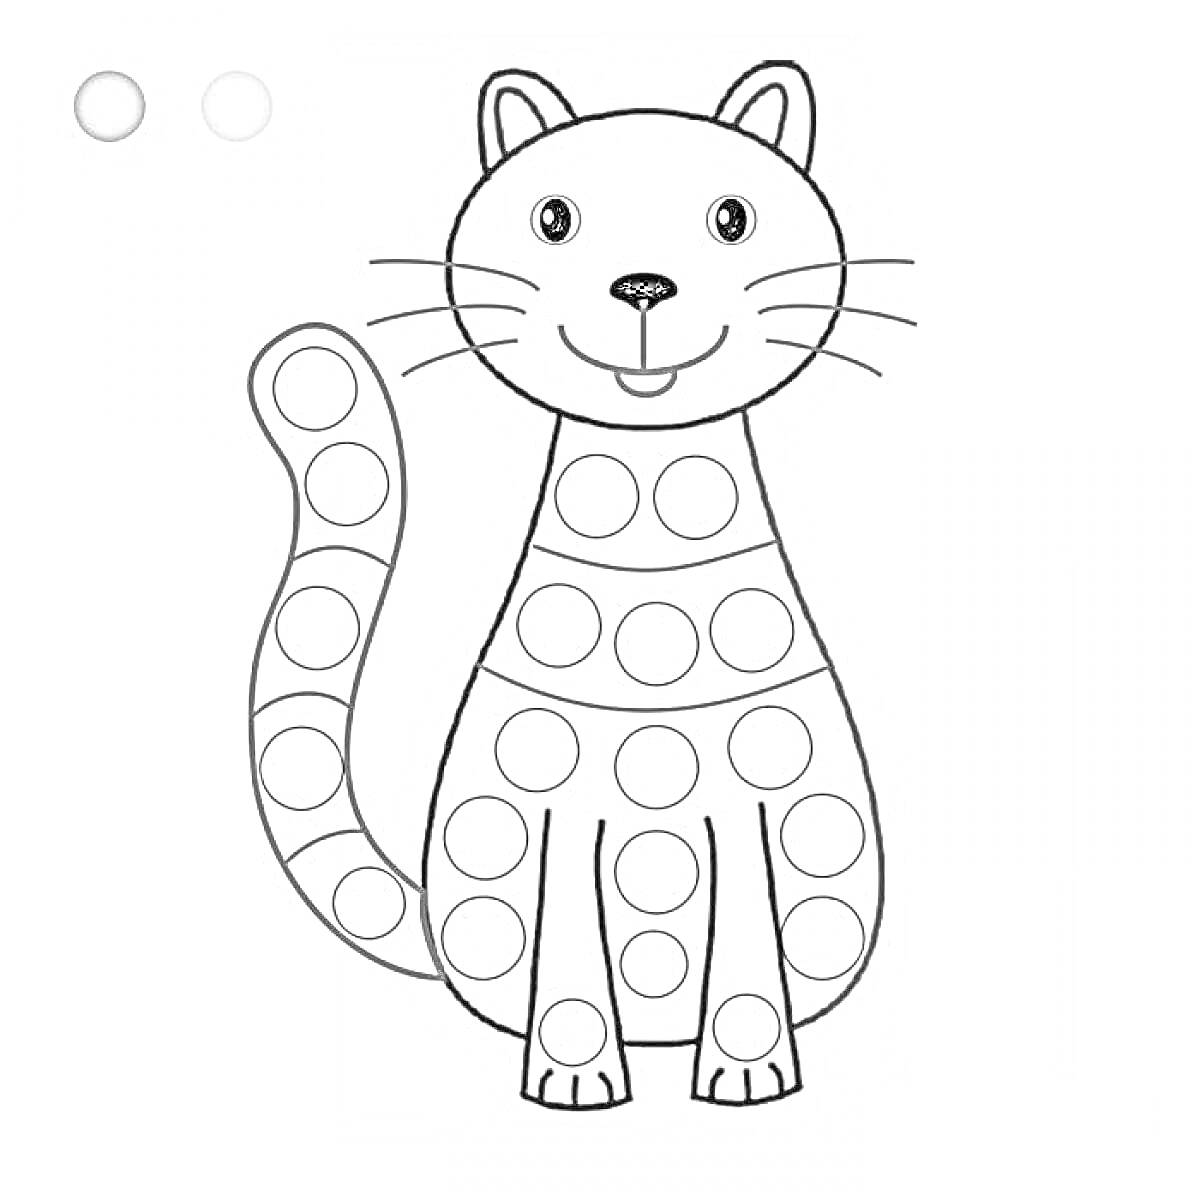 Раскраска Кот с кружками для раскрашивания пальчиками